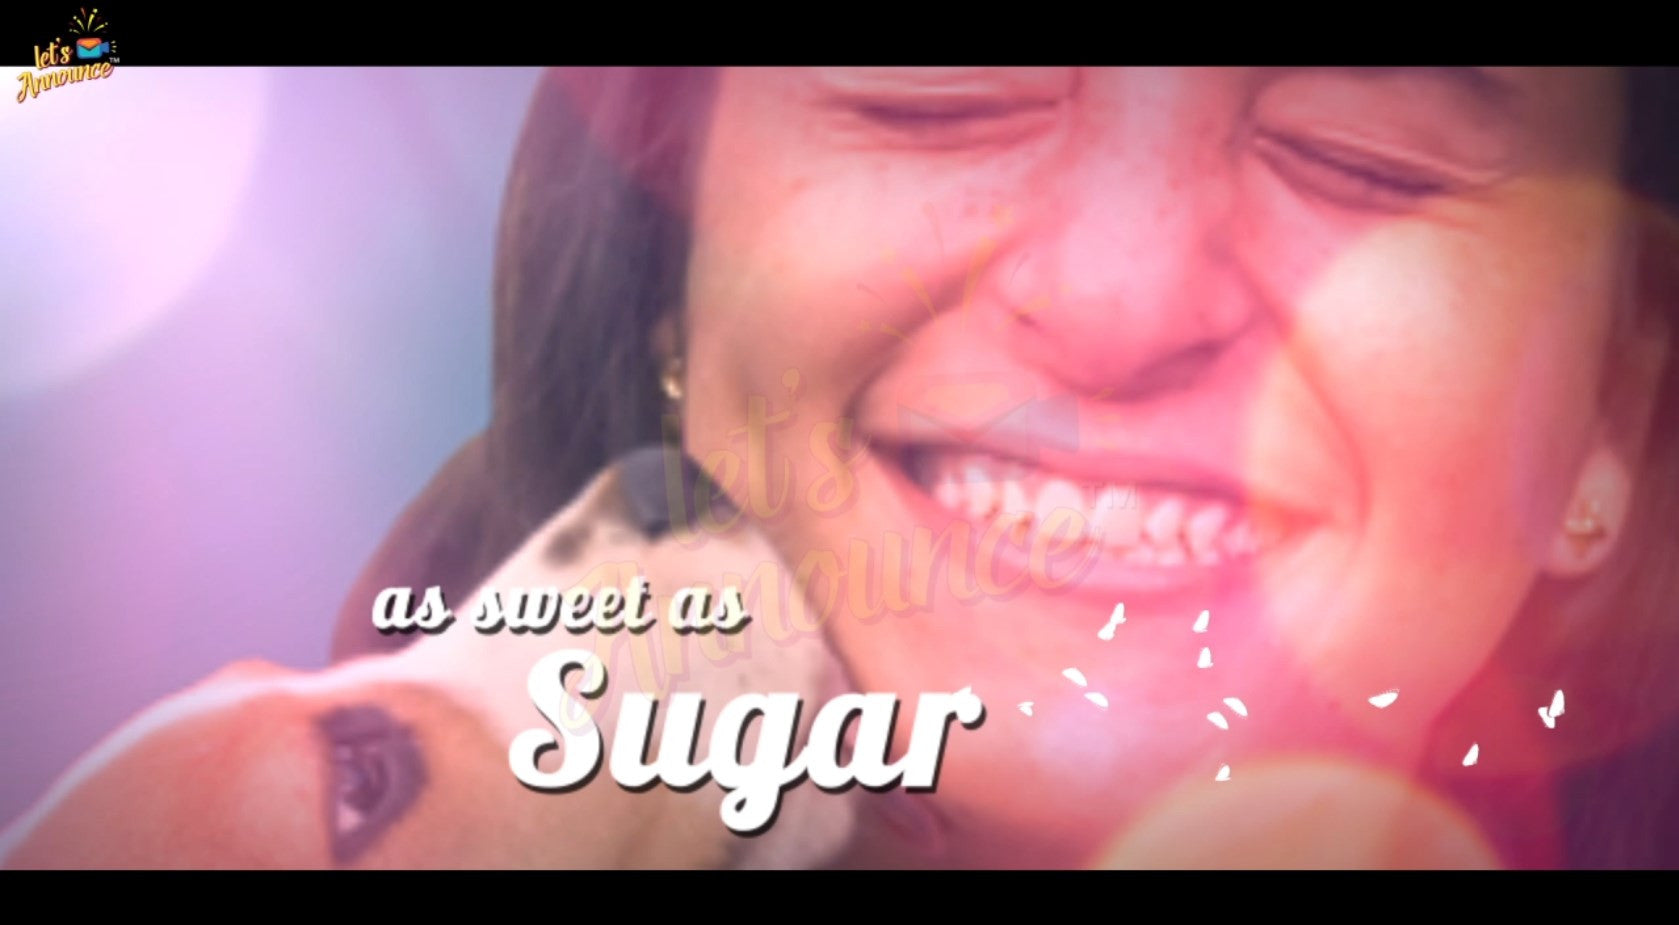 Sugar Love (30 sec)